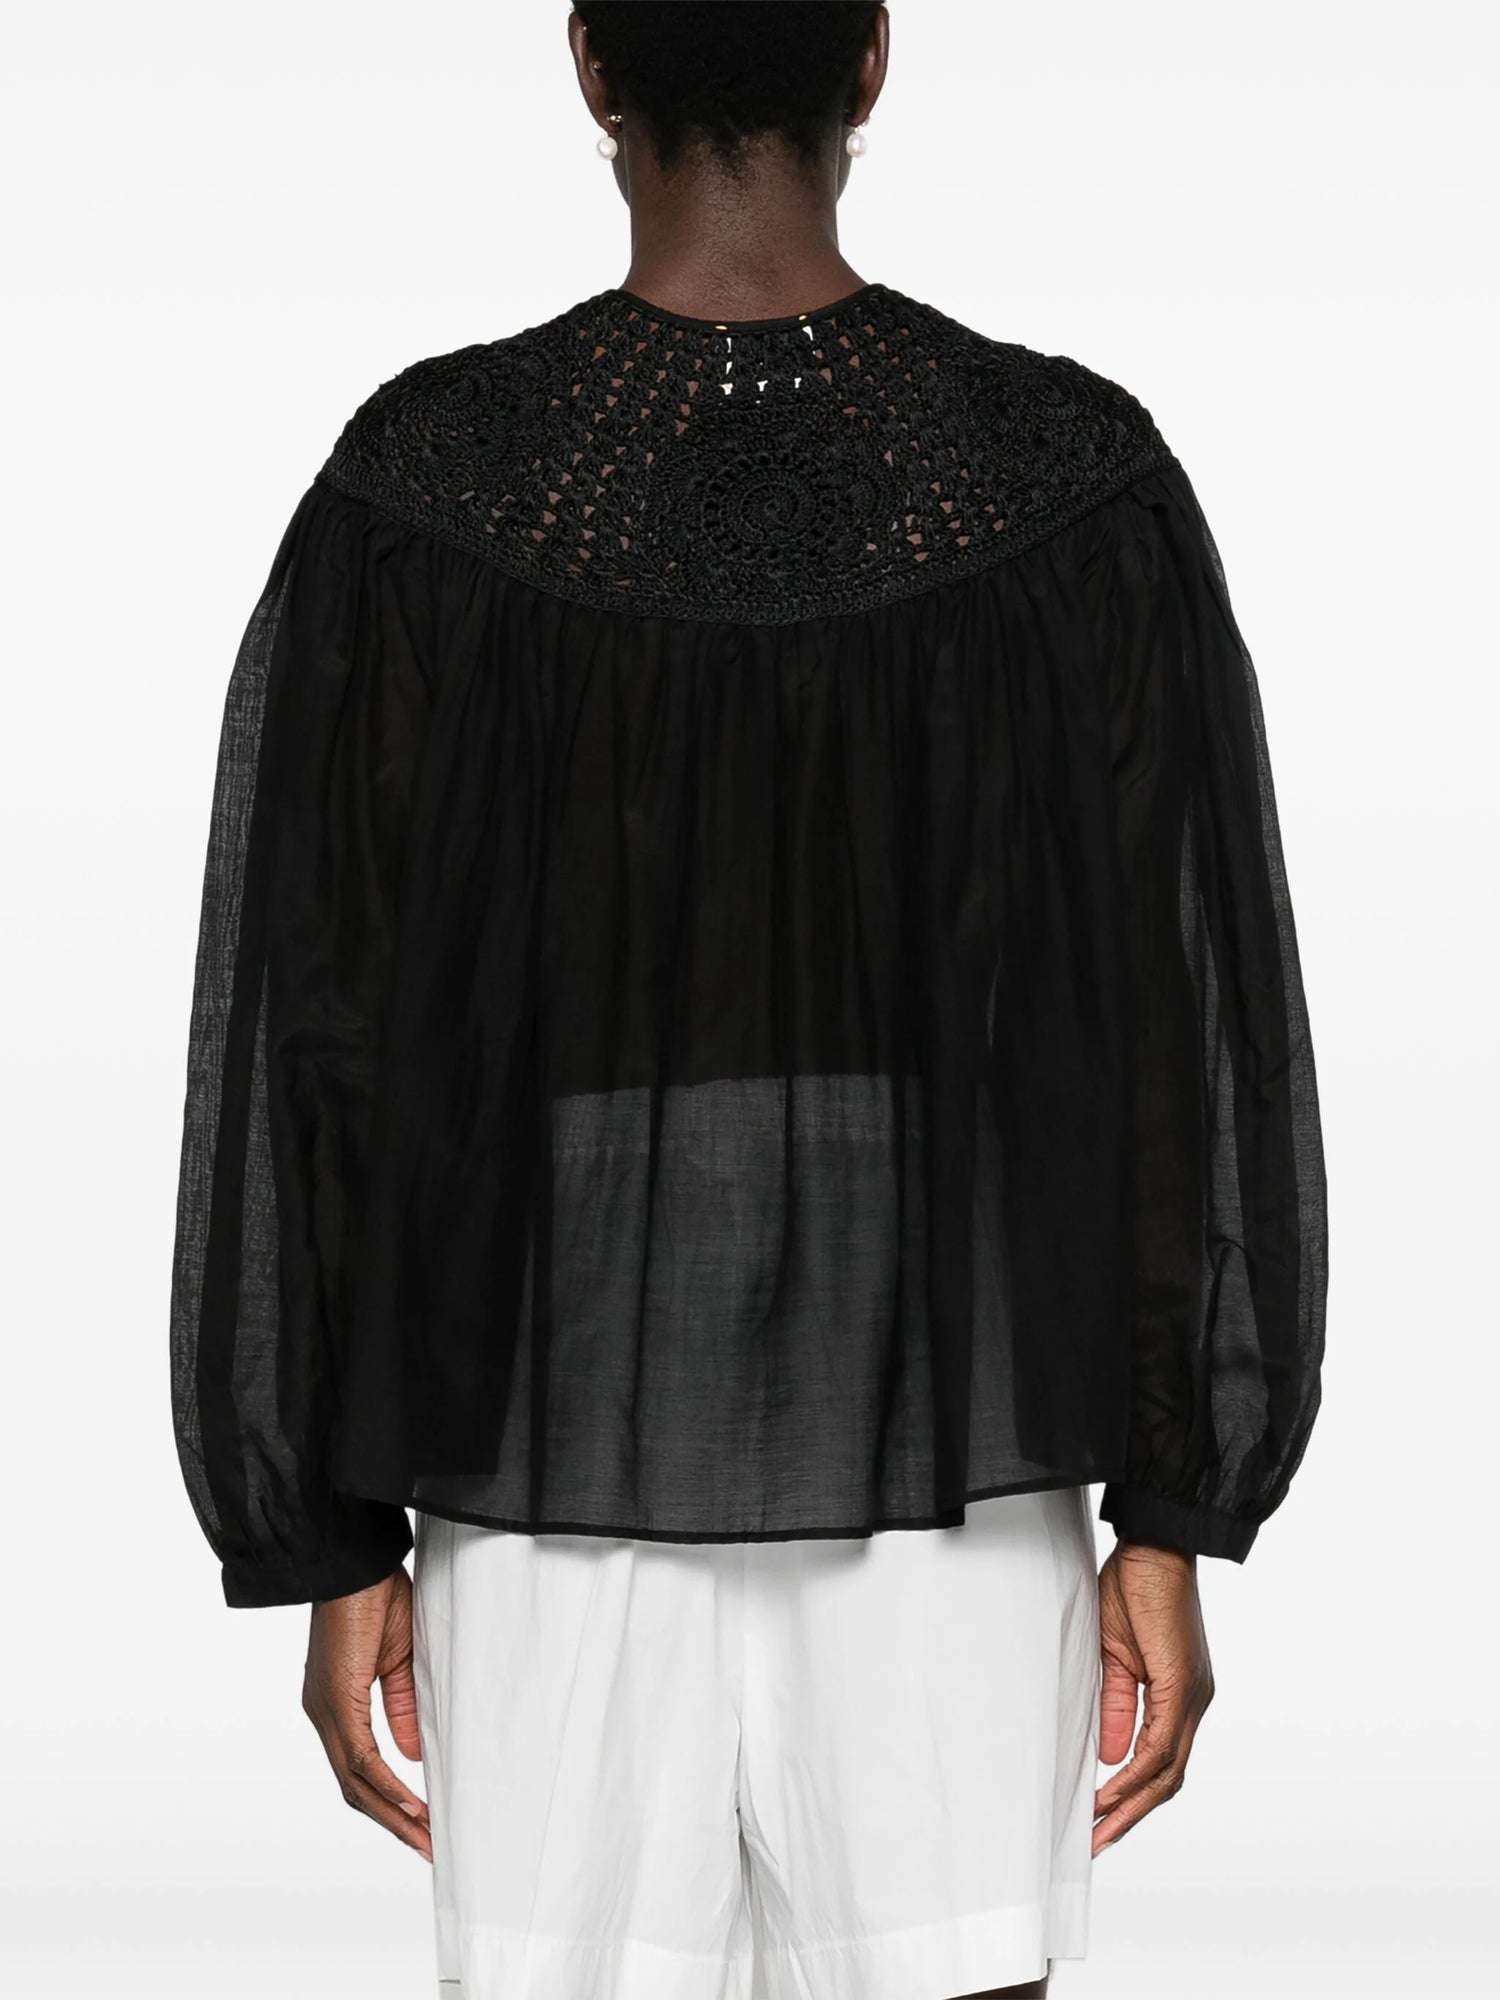 Cotton silk voile bohemian shirt crochet details, black